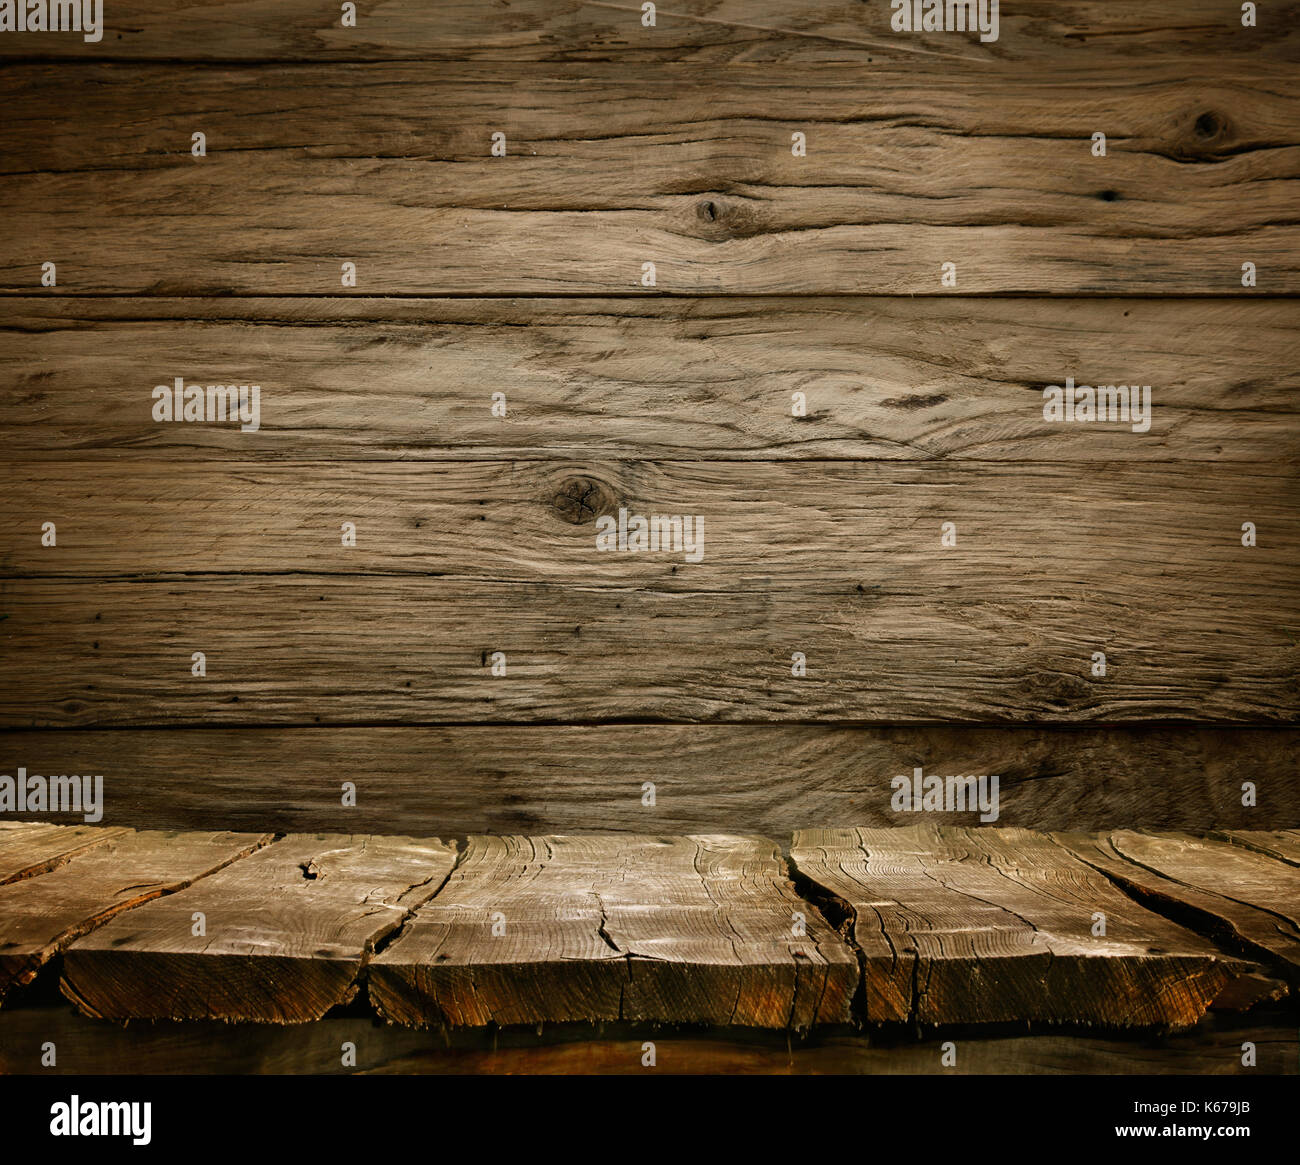 Fond bois - table avec mur en bois. table en bois. fond écran vide Banque D'Images